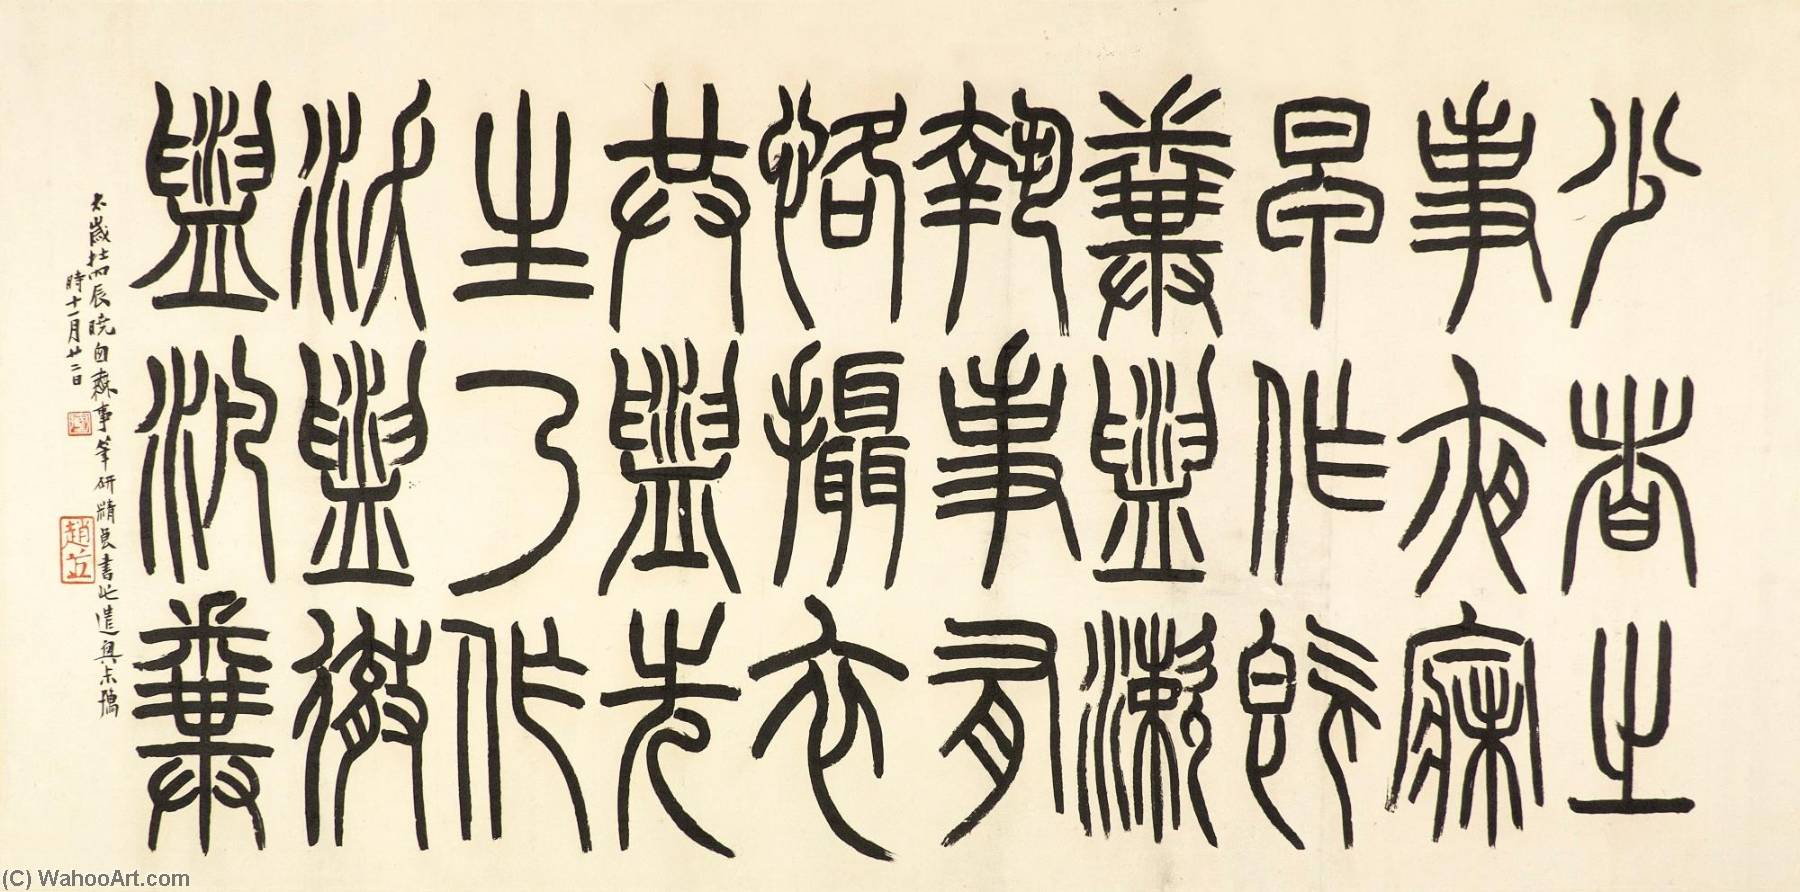 Иероглифы печати. Китайская каллиграфия чжуаньшу. Стили китайской каллиграфии чжуаньшу. Сяо Чжуань письменность. Письменность чжуаньшу.